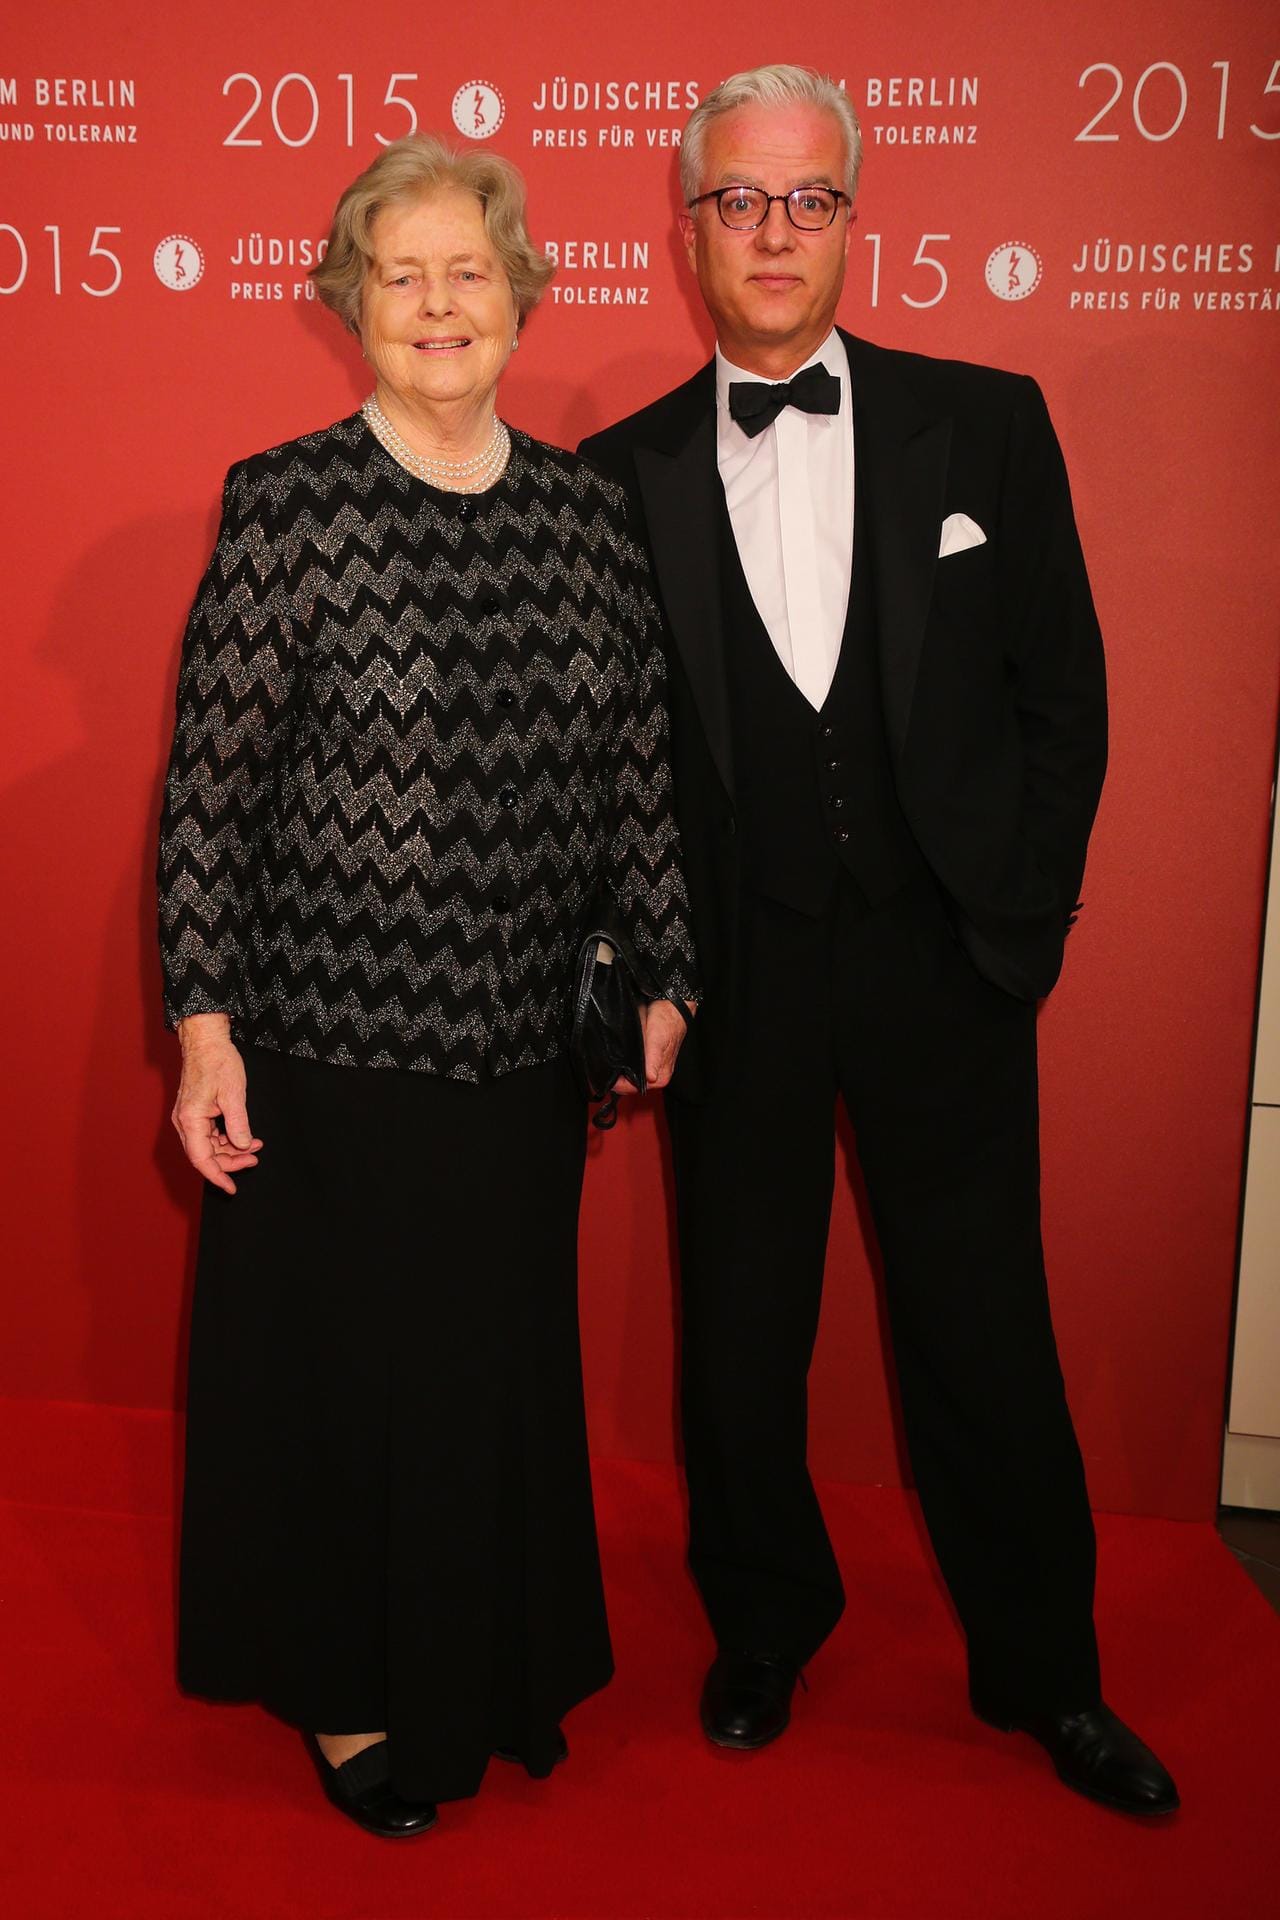 2015: Fritz von Weizsäcker mit seiner Mutter Marianne auf dem Roten Teppich beim Preis für Verständigung und Toleranz des Jüdischen Museums in Berlin.